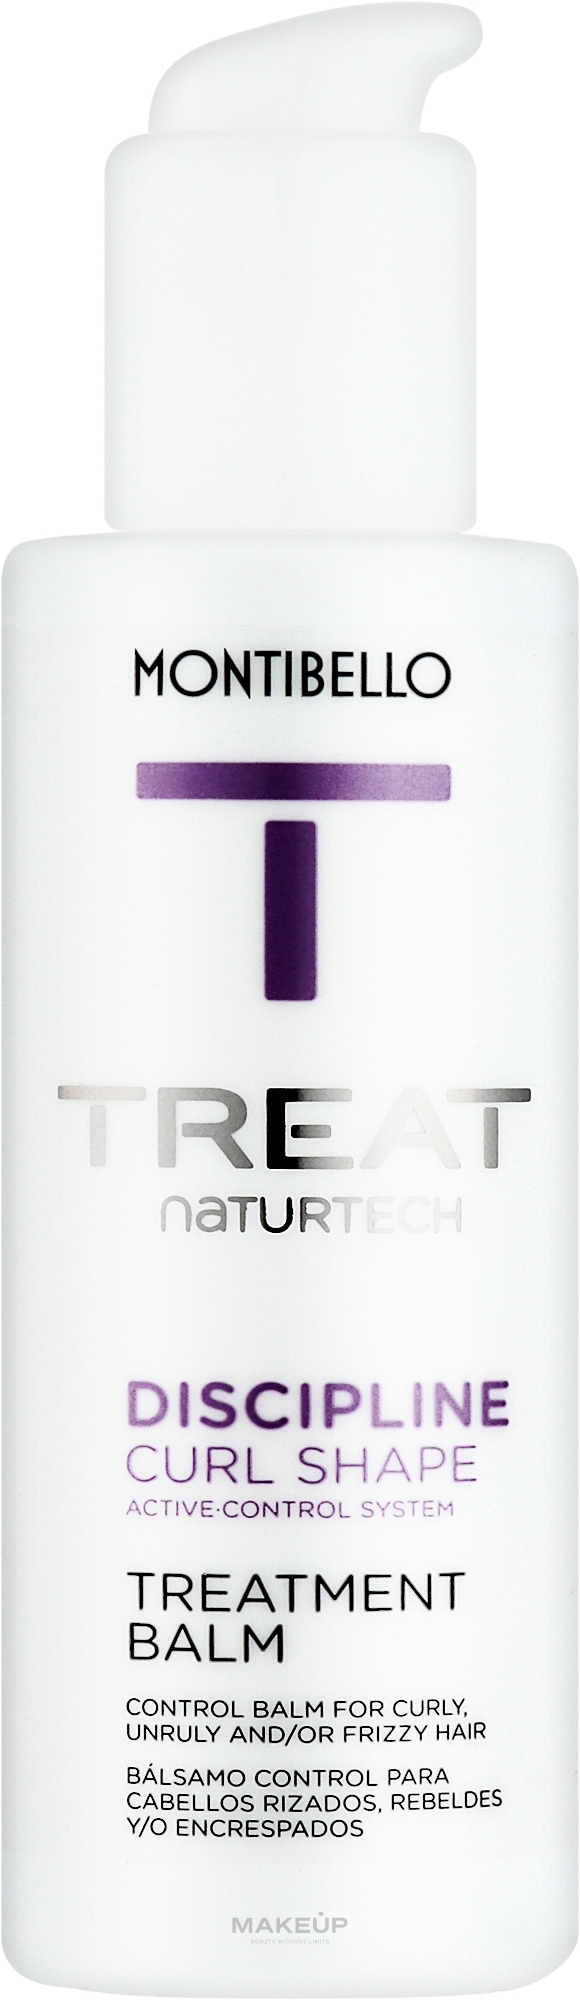 Бальзам для вьющихся, непослушных или пушистых волос - Montibello Treat NaturTech Discipline Curl Shape Treatment Balm — фото 150ml